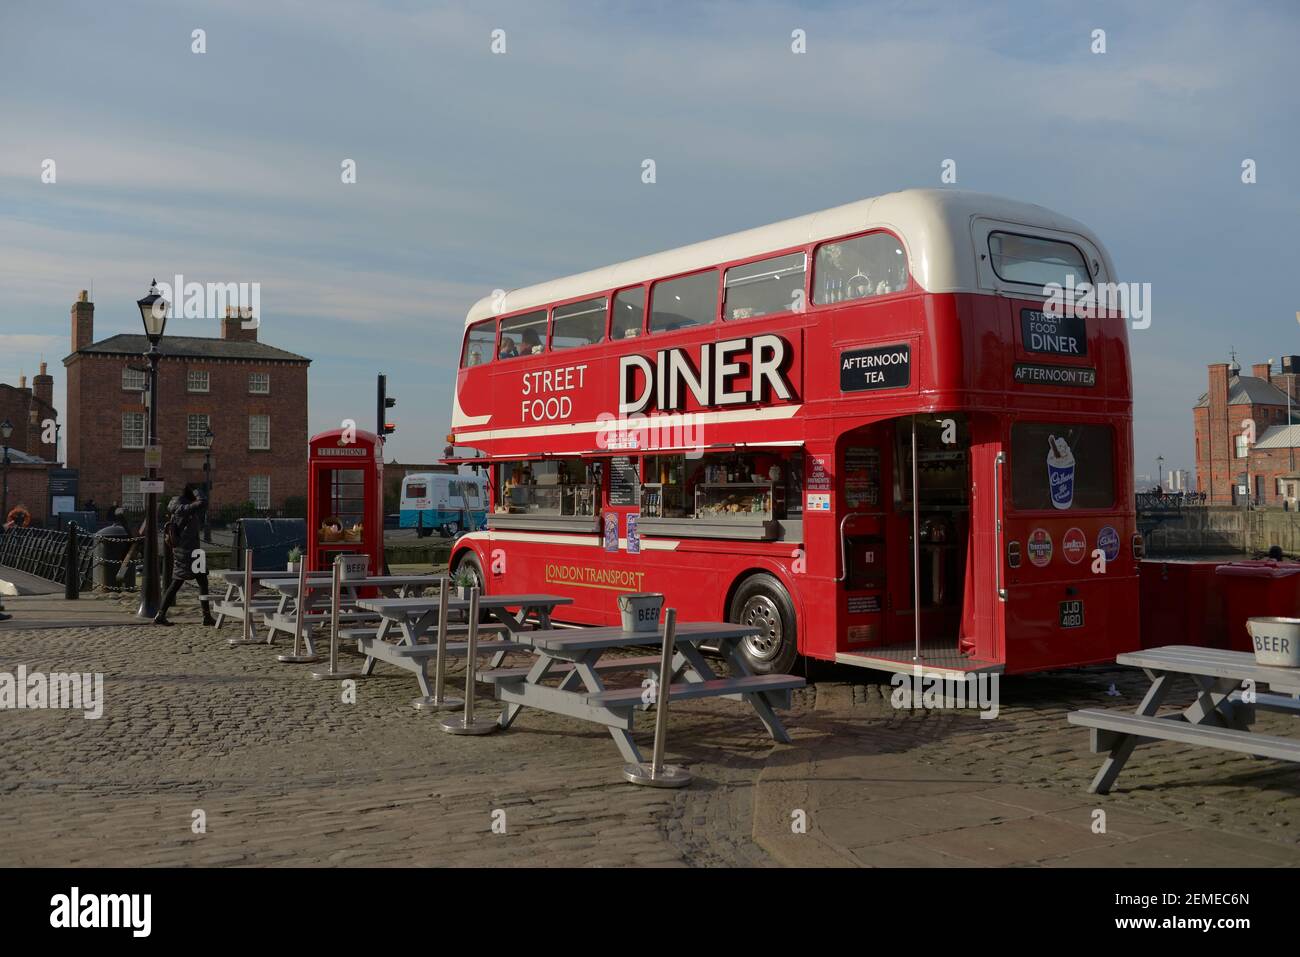 Liverpool, Royaume-Uni, 2 février 2020 : le soleil du printemps illumine le grand bus rouge à impériale de restauration de rue que l'on trouve au quai albert. Banque D'Images